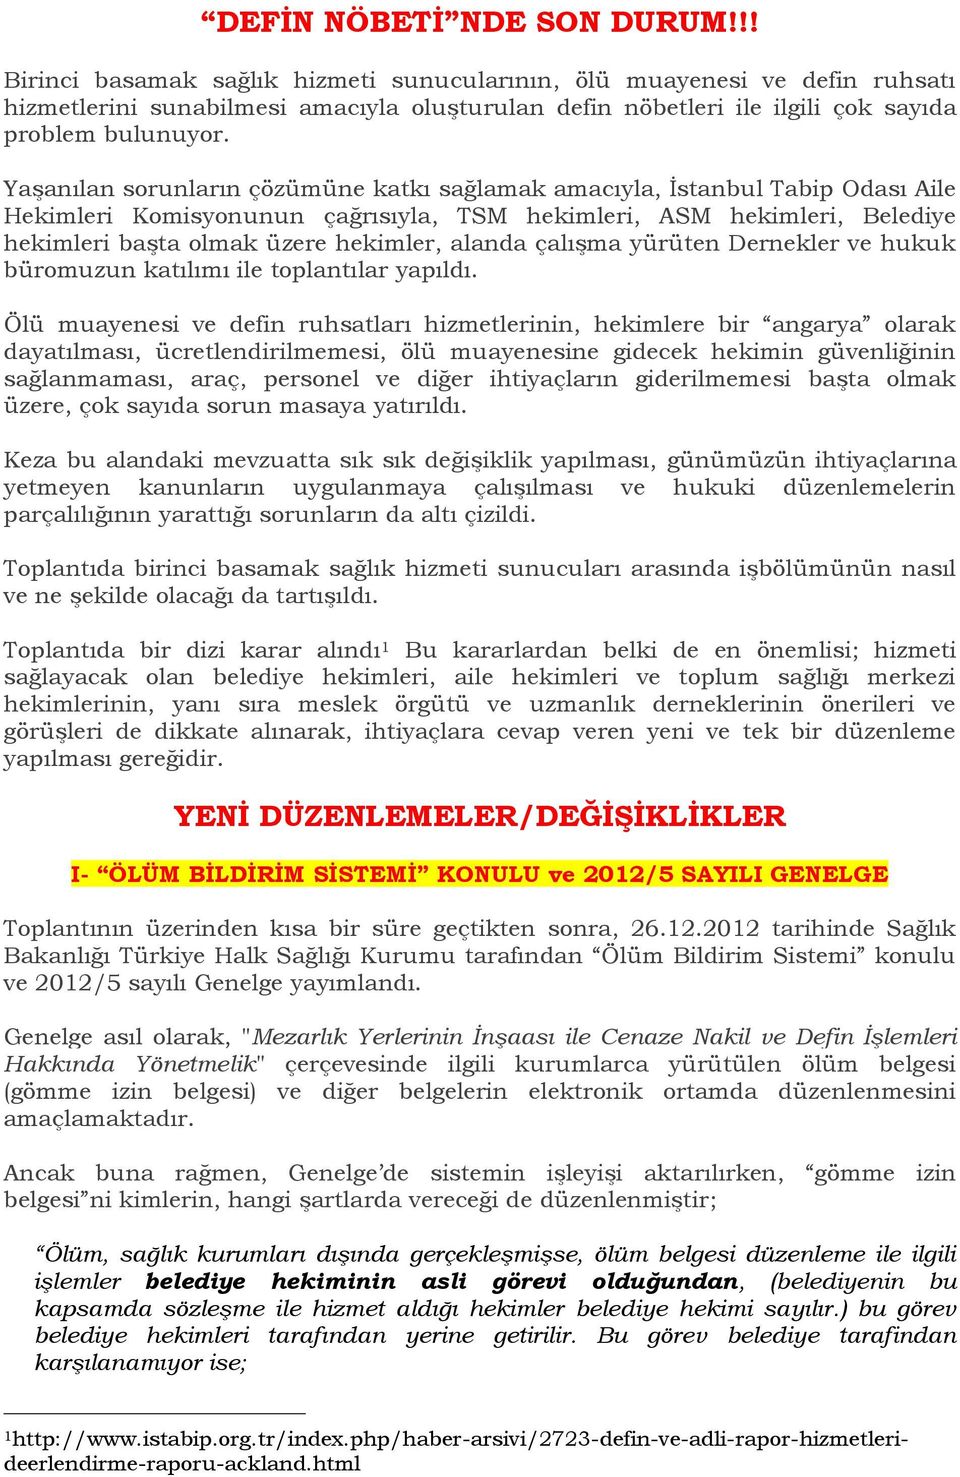 Yaşanılan sorunların çözümüne katkı sağlamak amacıyla, İstanbul Tabip Odası Aile Hekimleri Komisyonunun çağrısıyla, TSM hekimleri, ASM hekimleri, Belediye hekimleri başta olmak üzere hekimler, alanda